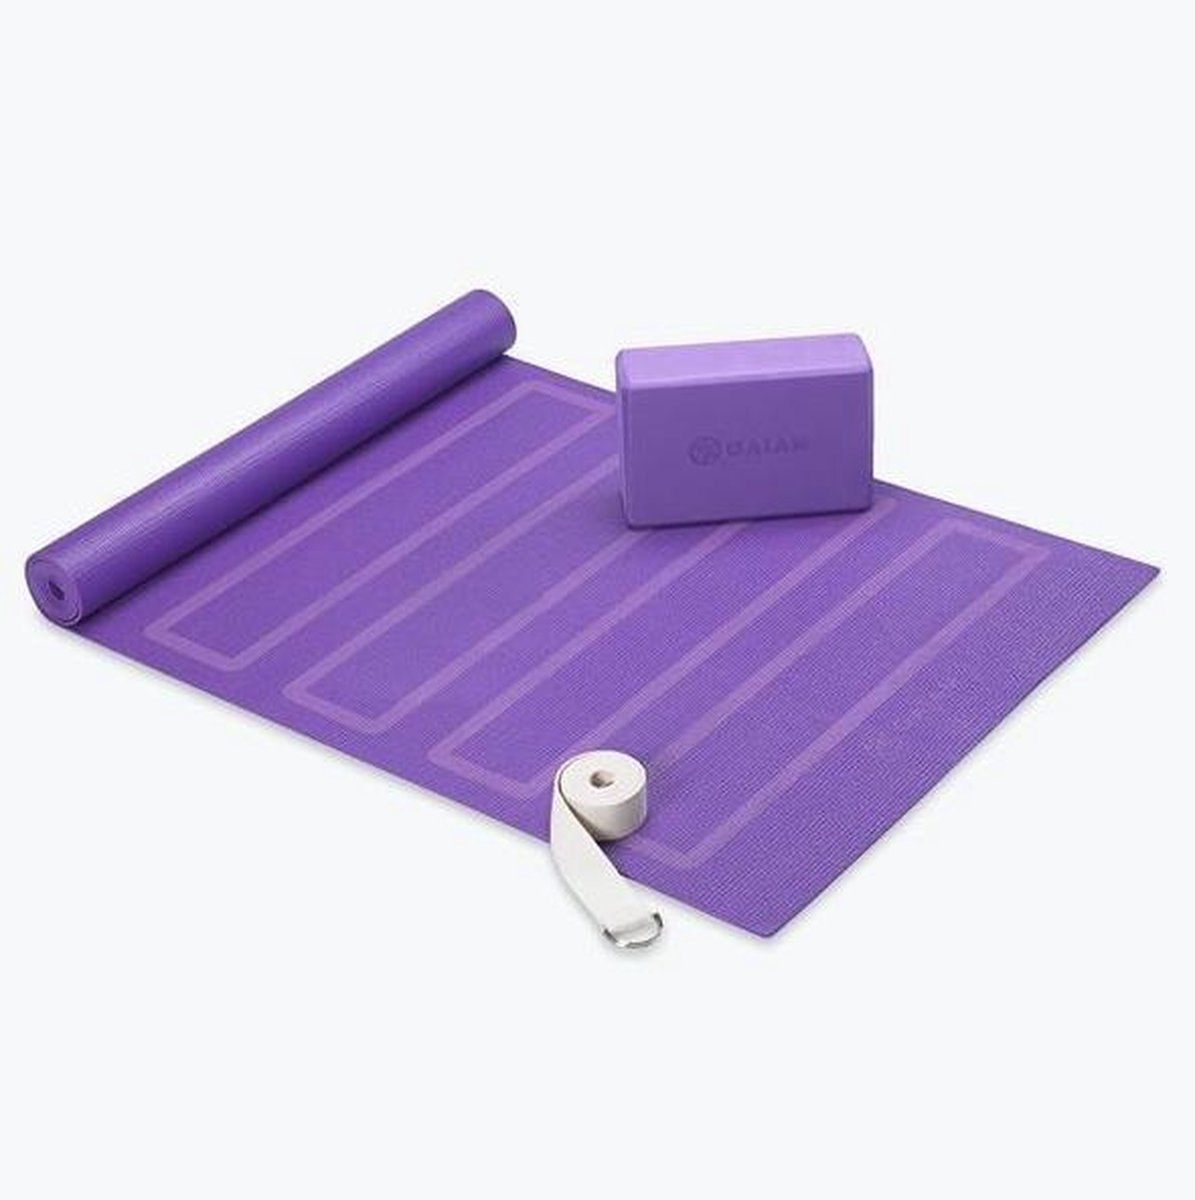 Gaiam - Yoga Beginners Kit